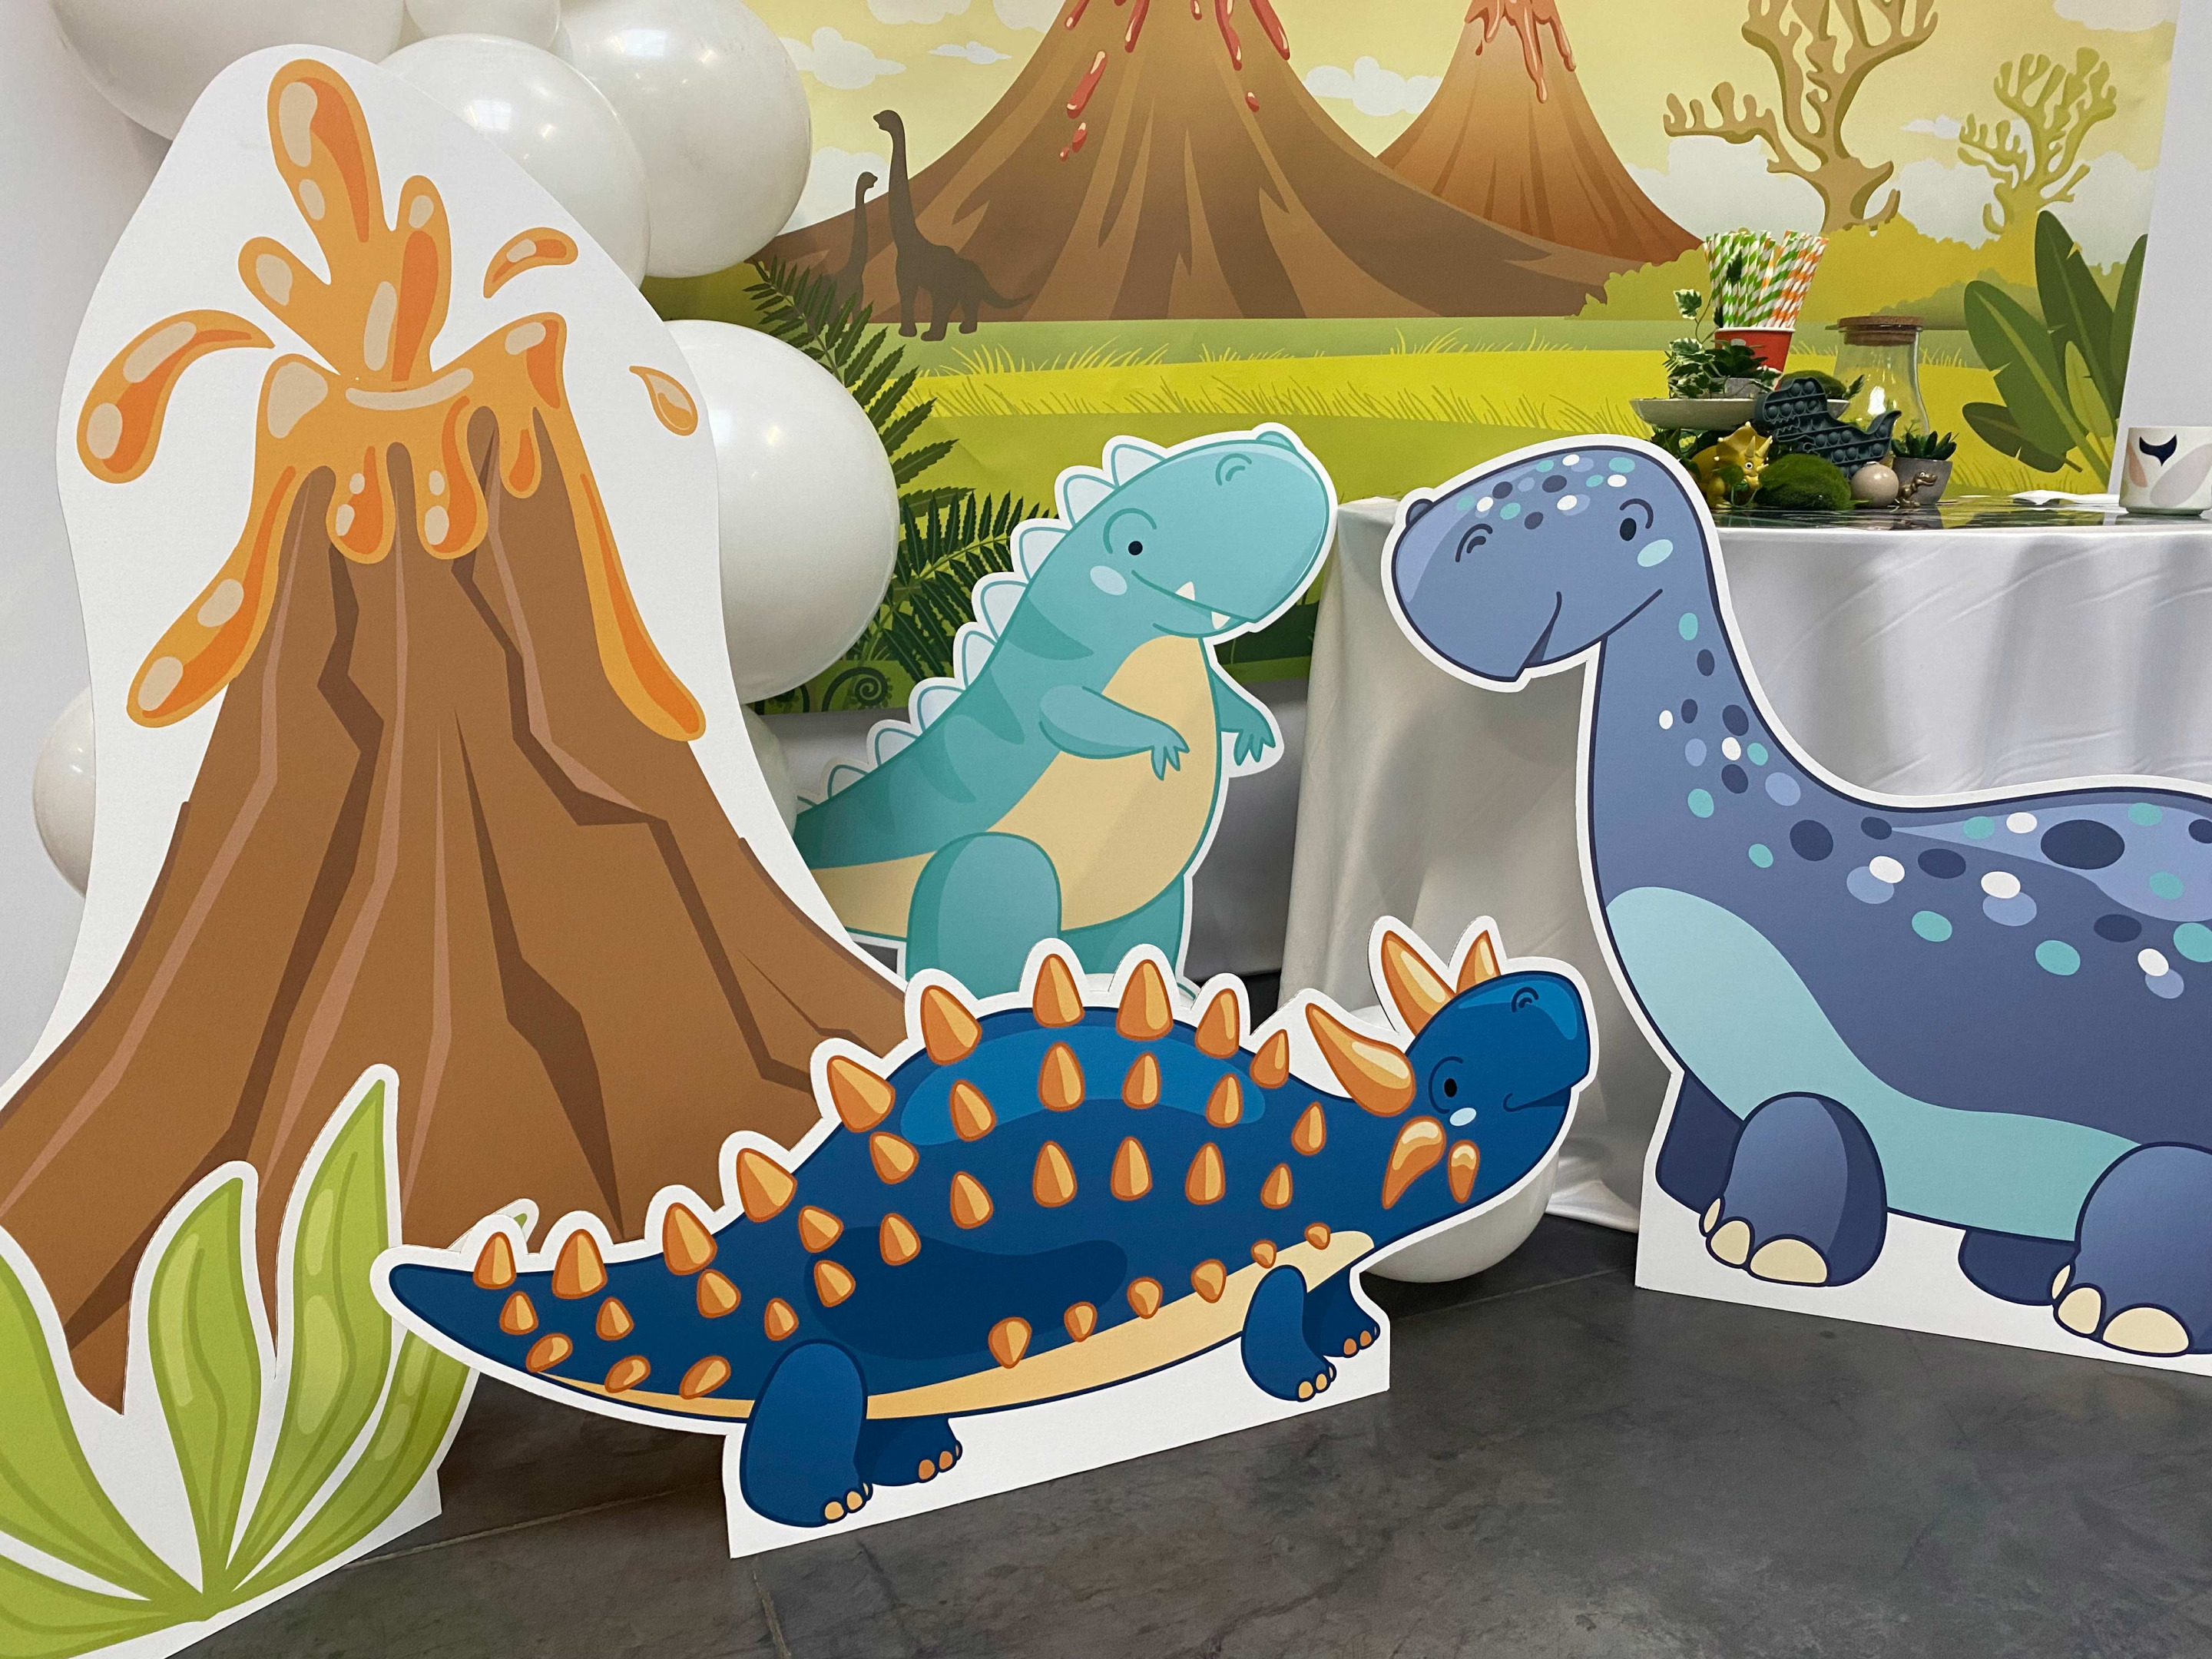 Ensemble décorations anniversaire Dinosaure